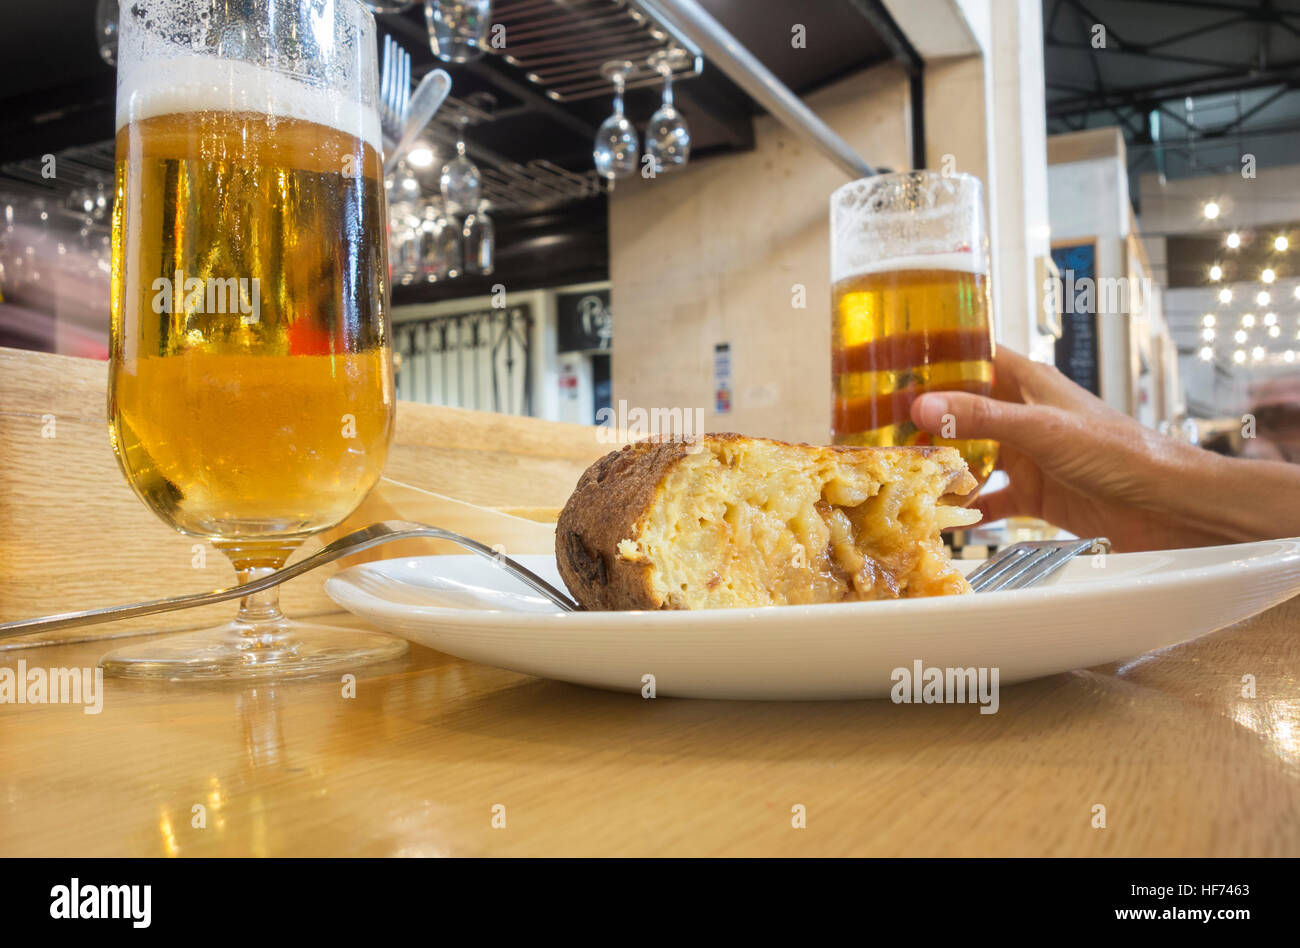 Il Tapas bar in Spagna: Tortilla Espanola ( frittata spagnola ) e bicchiere di fredda birra spagnola (Cerveza). Foto Stock